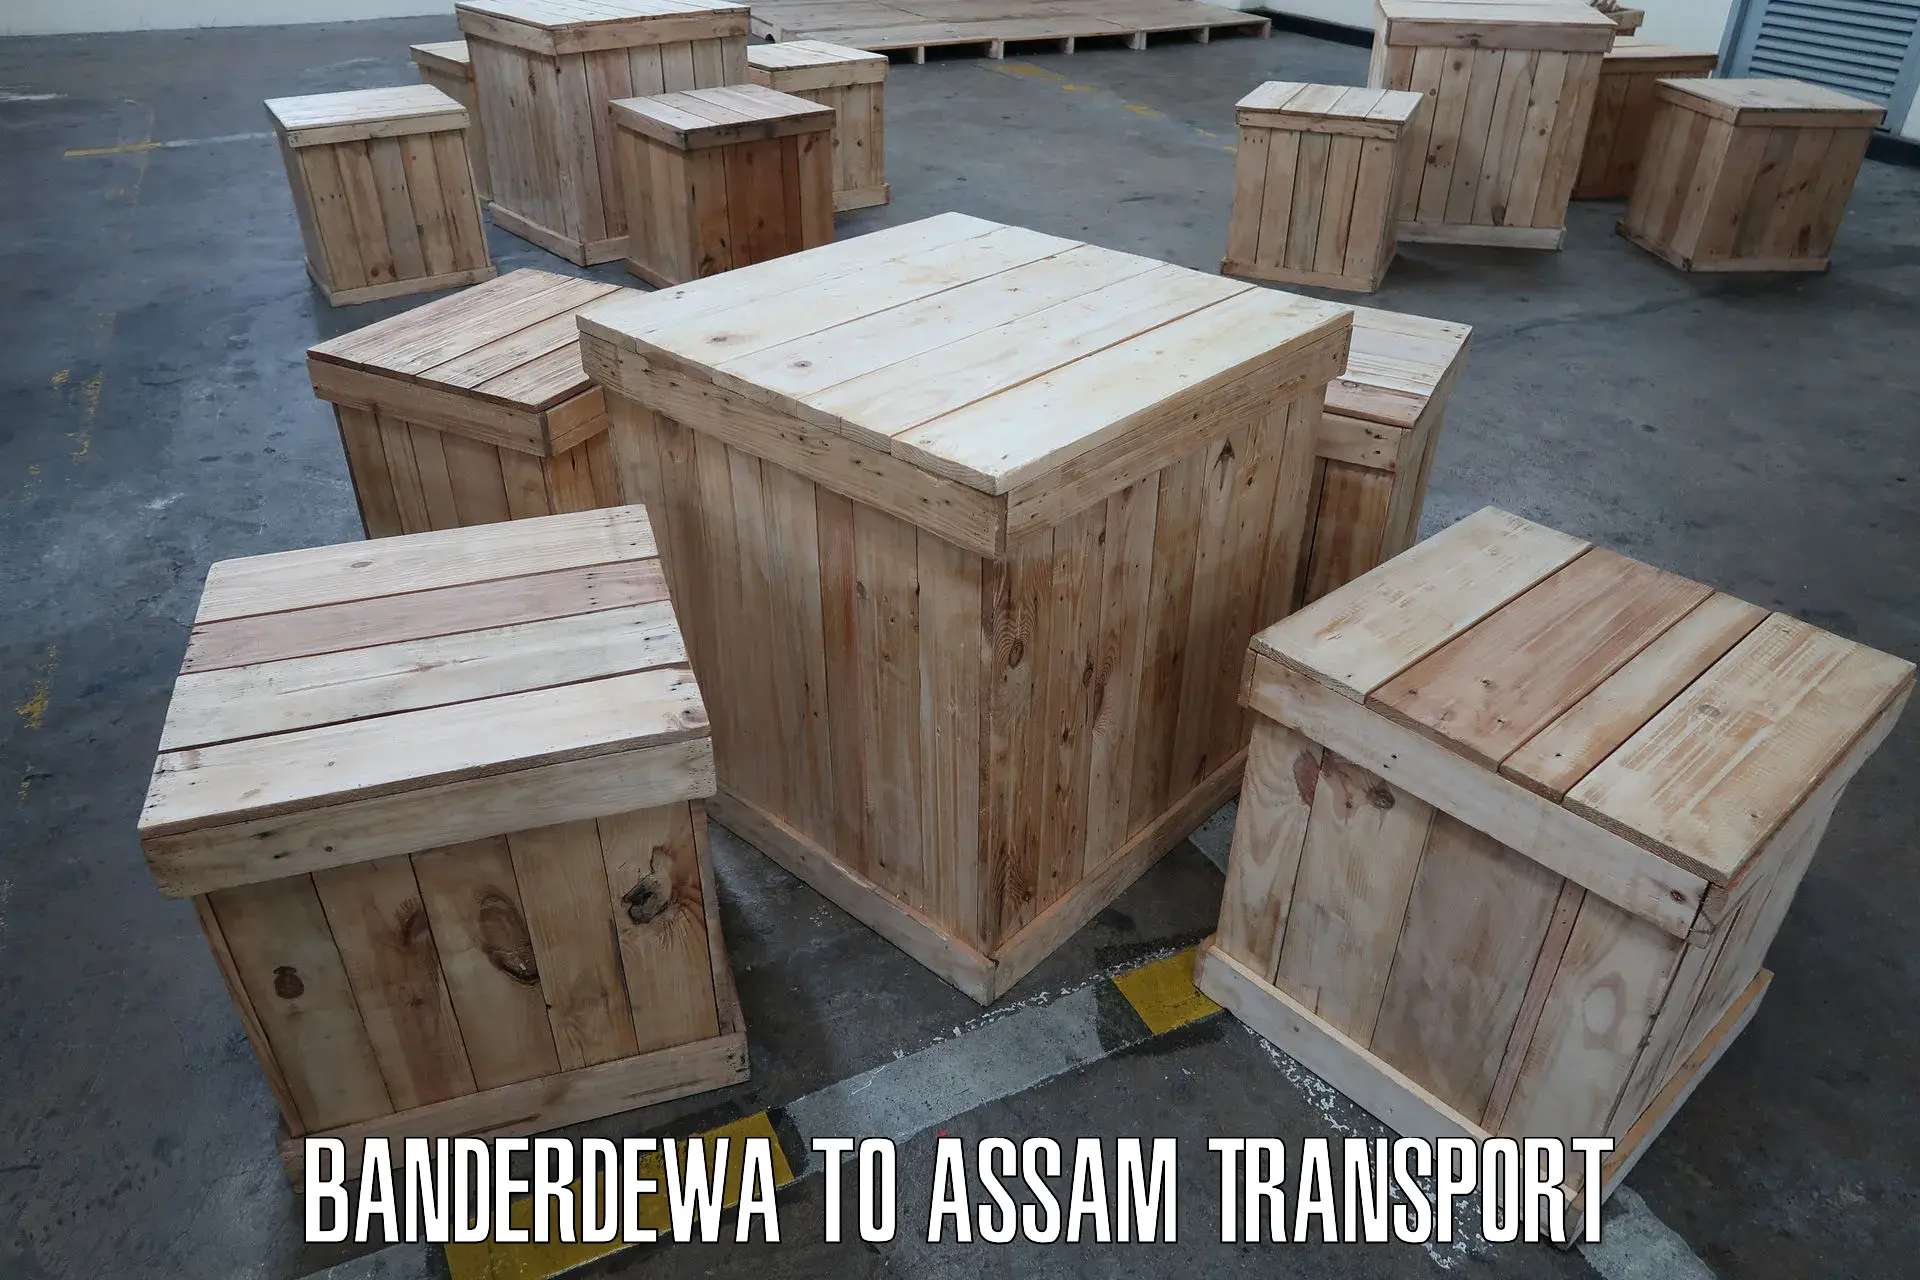 Bike transport service in Banderdewa to Assam